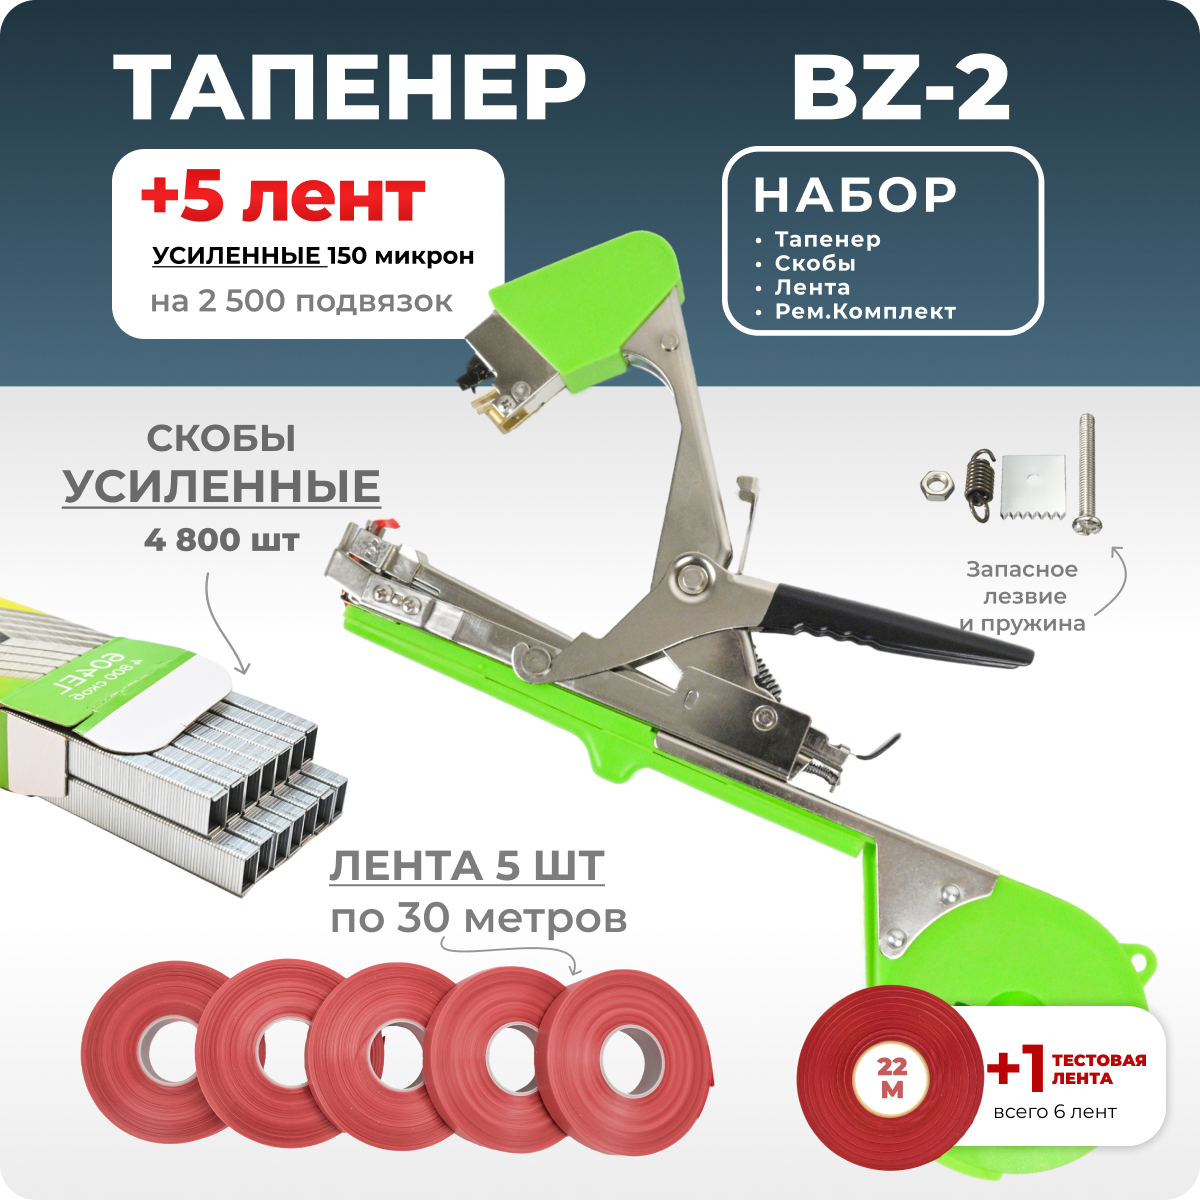 Тапенер для подвязки Bz-2 + скобы + 5 красных лент + ремкомплект